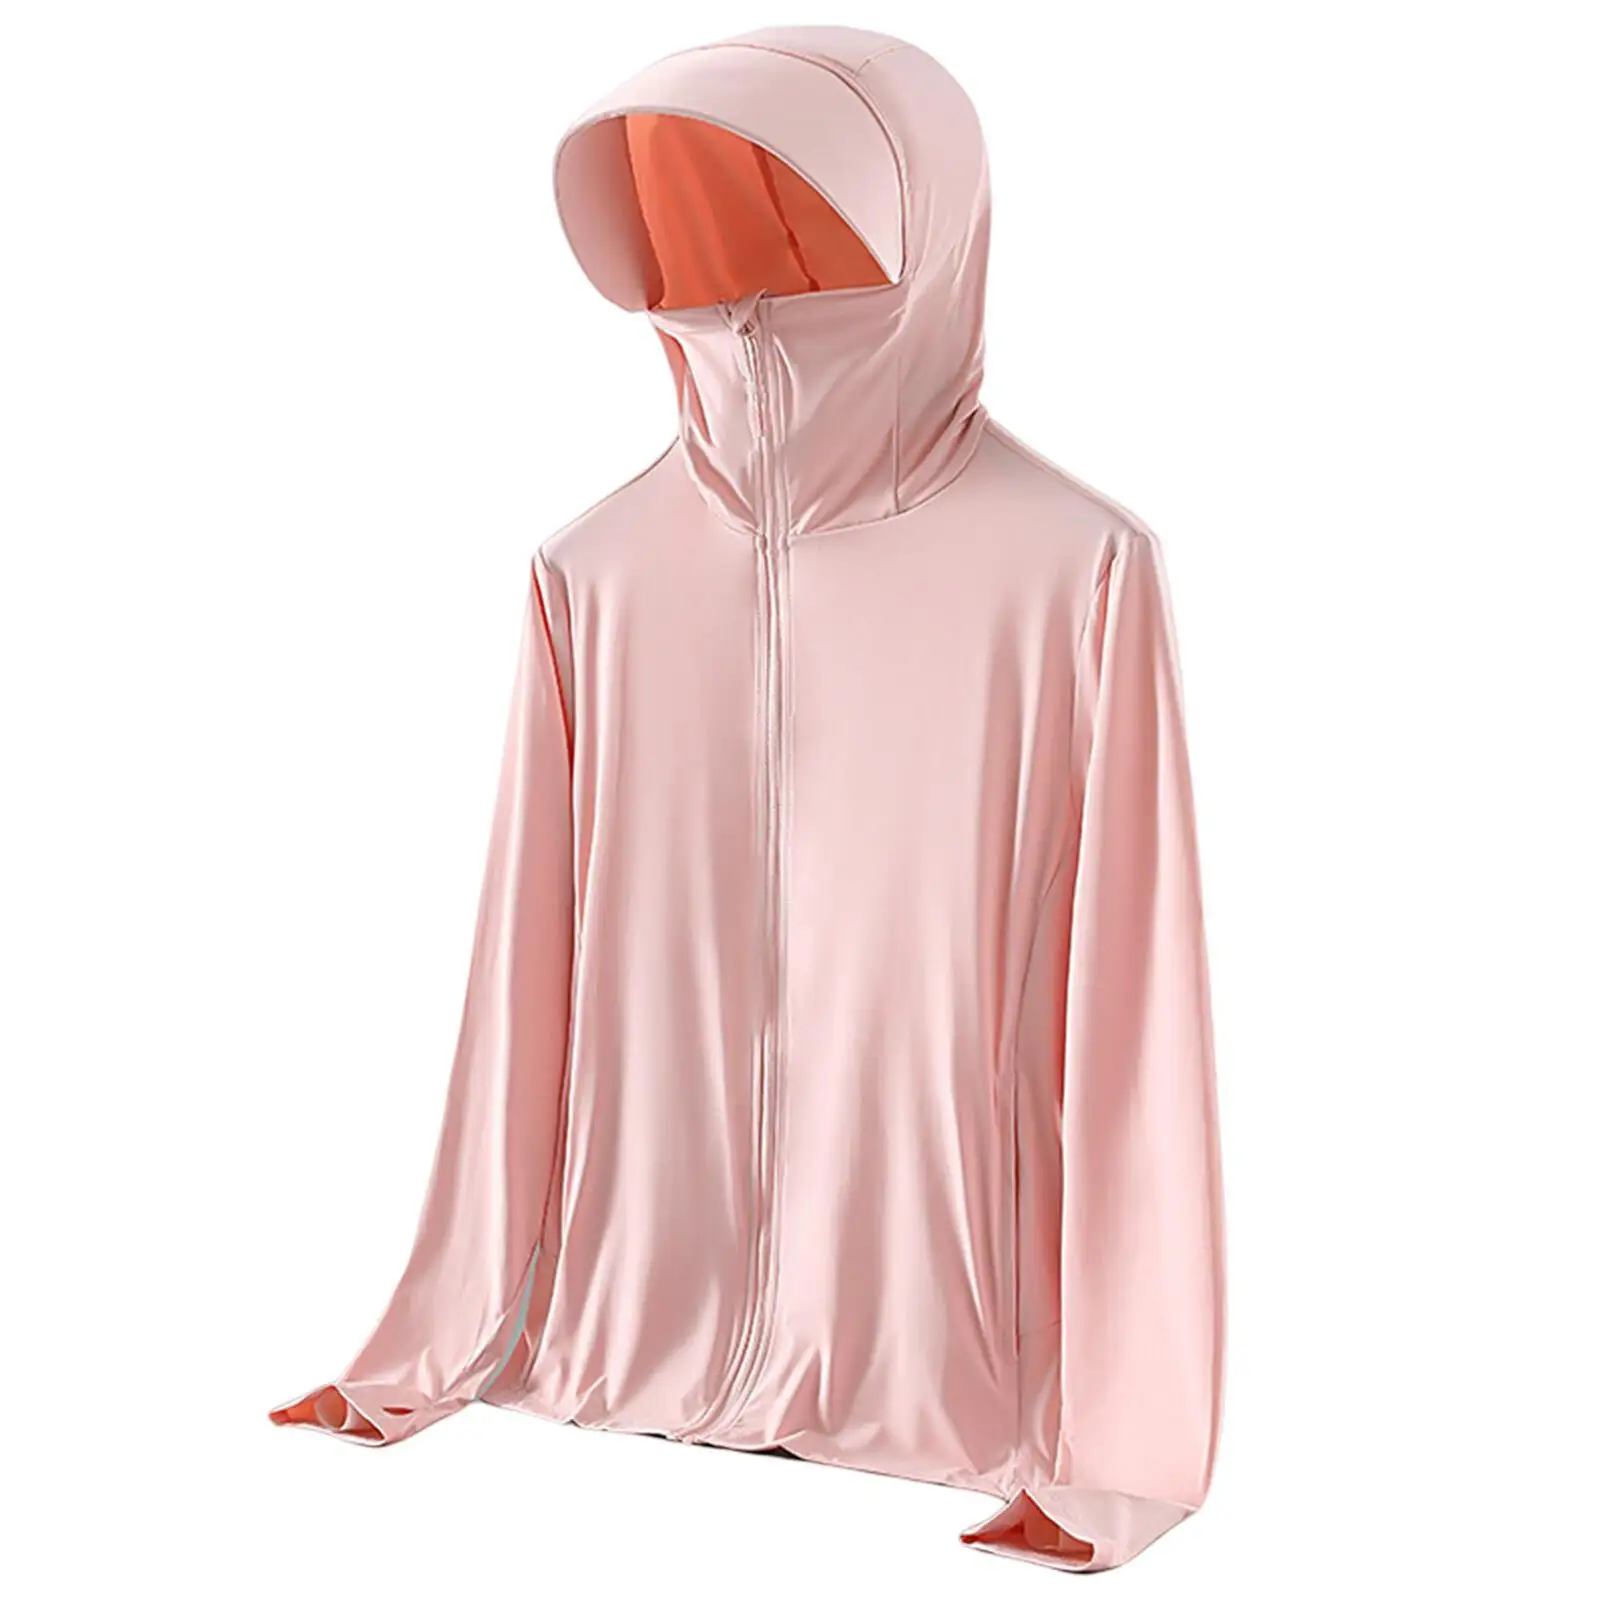 도매 고품질 남녀 공용 태양 보호 재킷/태양 차단 재킷-저렴한 가격-제조업체에서 직접